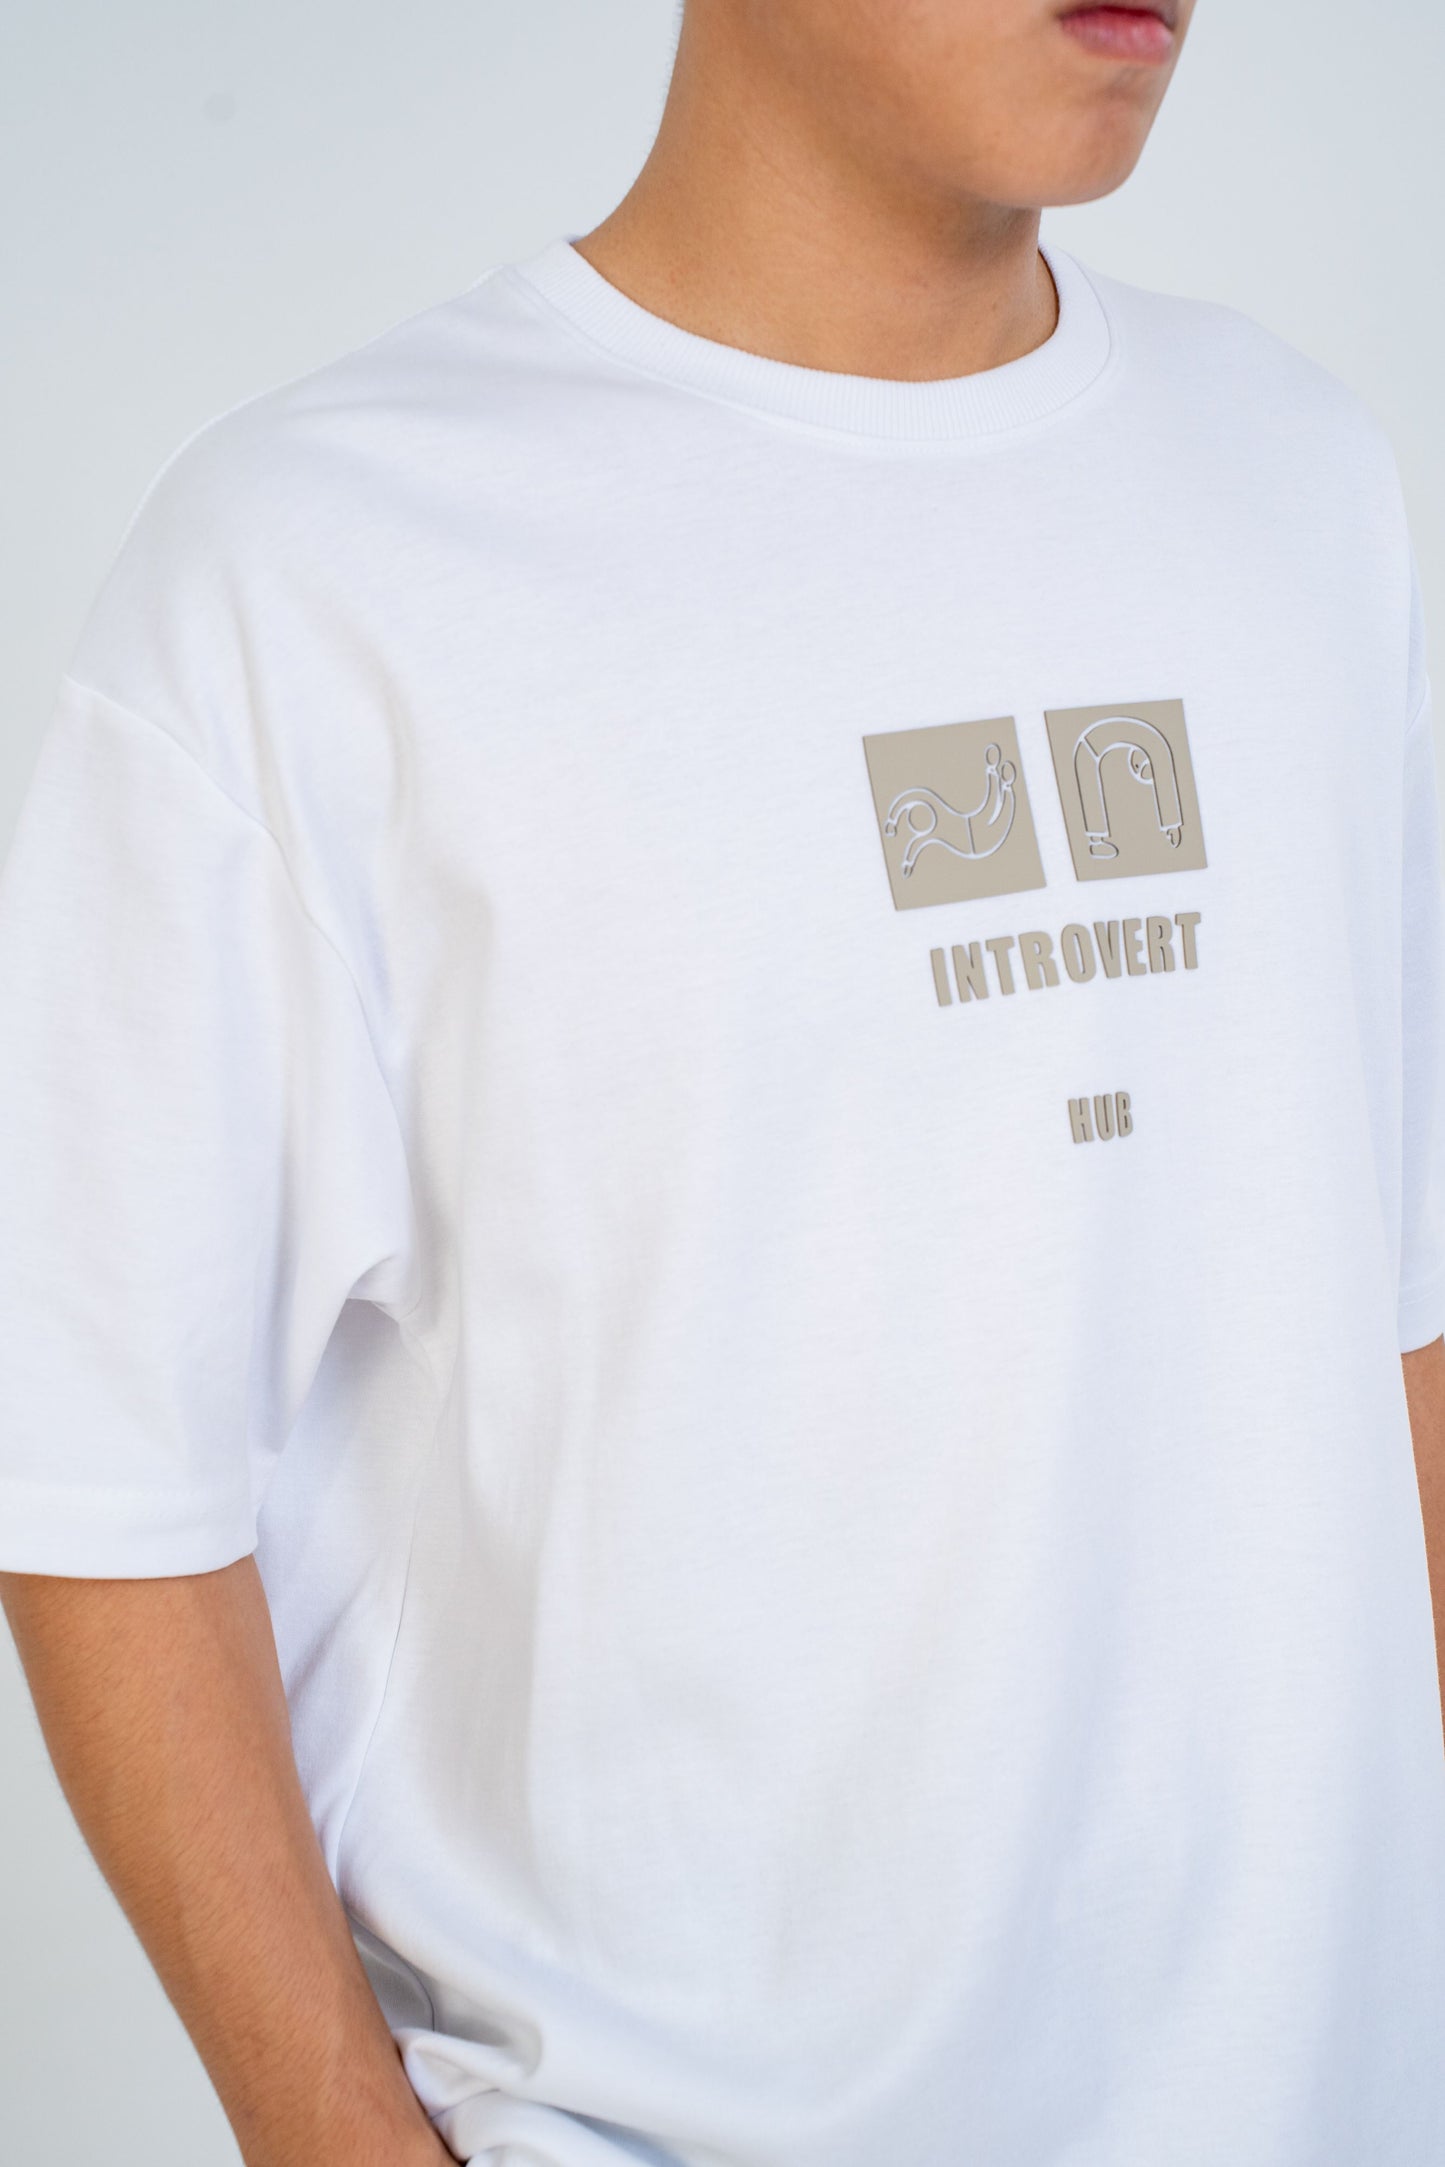 Introvert Logo Tee - White